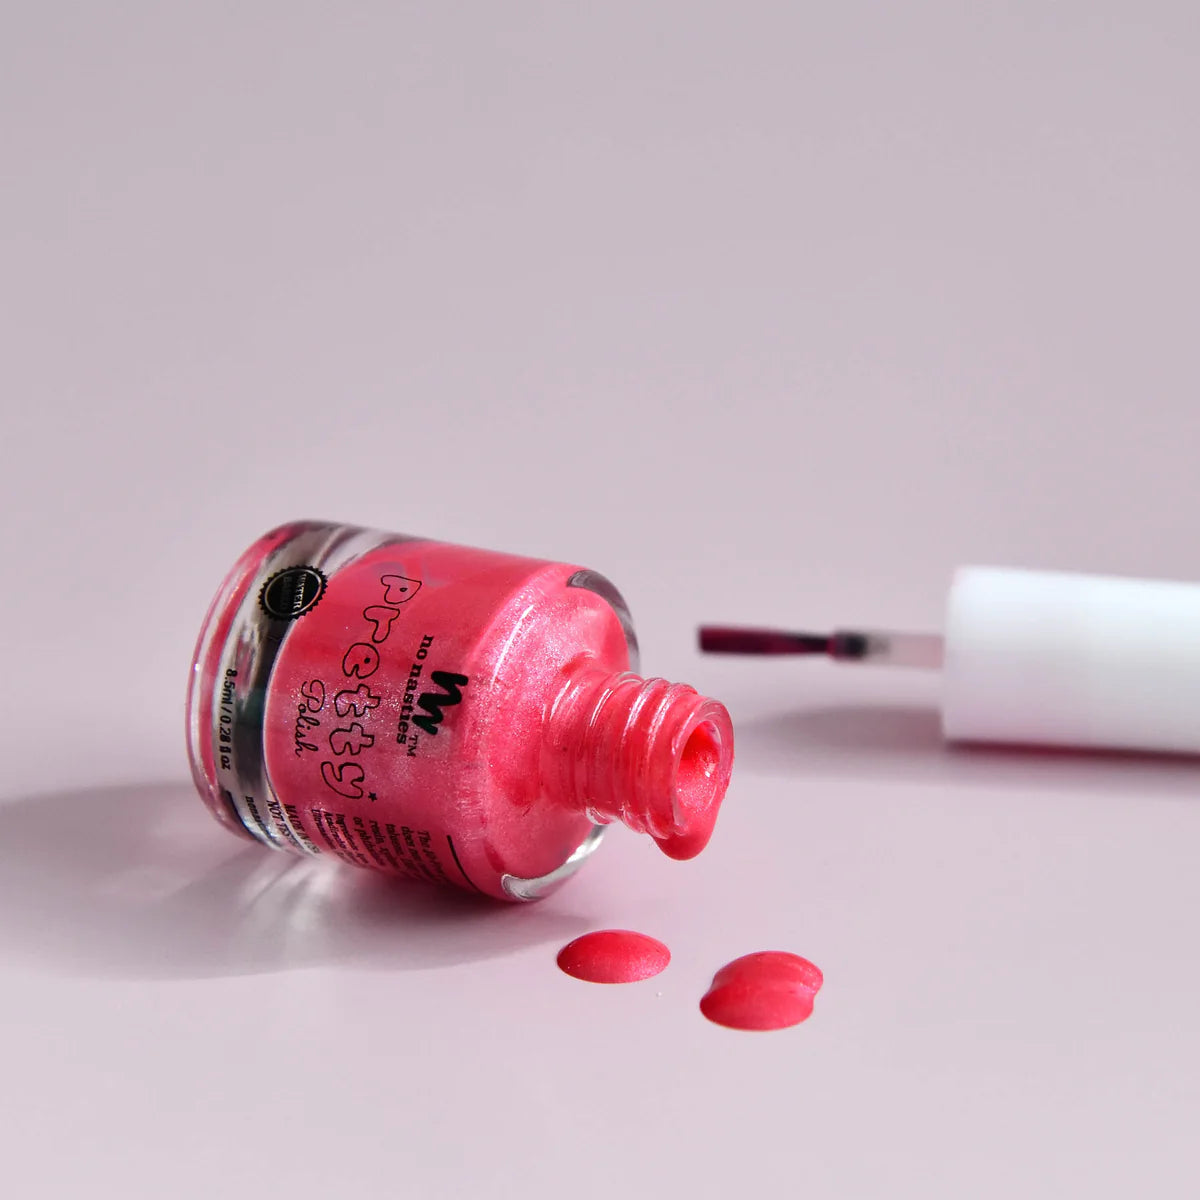 Water-Based Peelable Nail Polish - Bright Pink